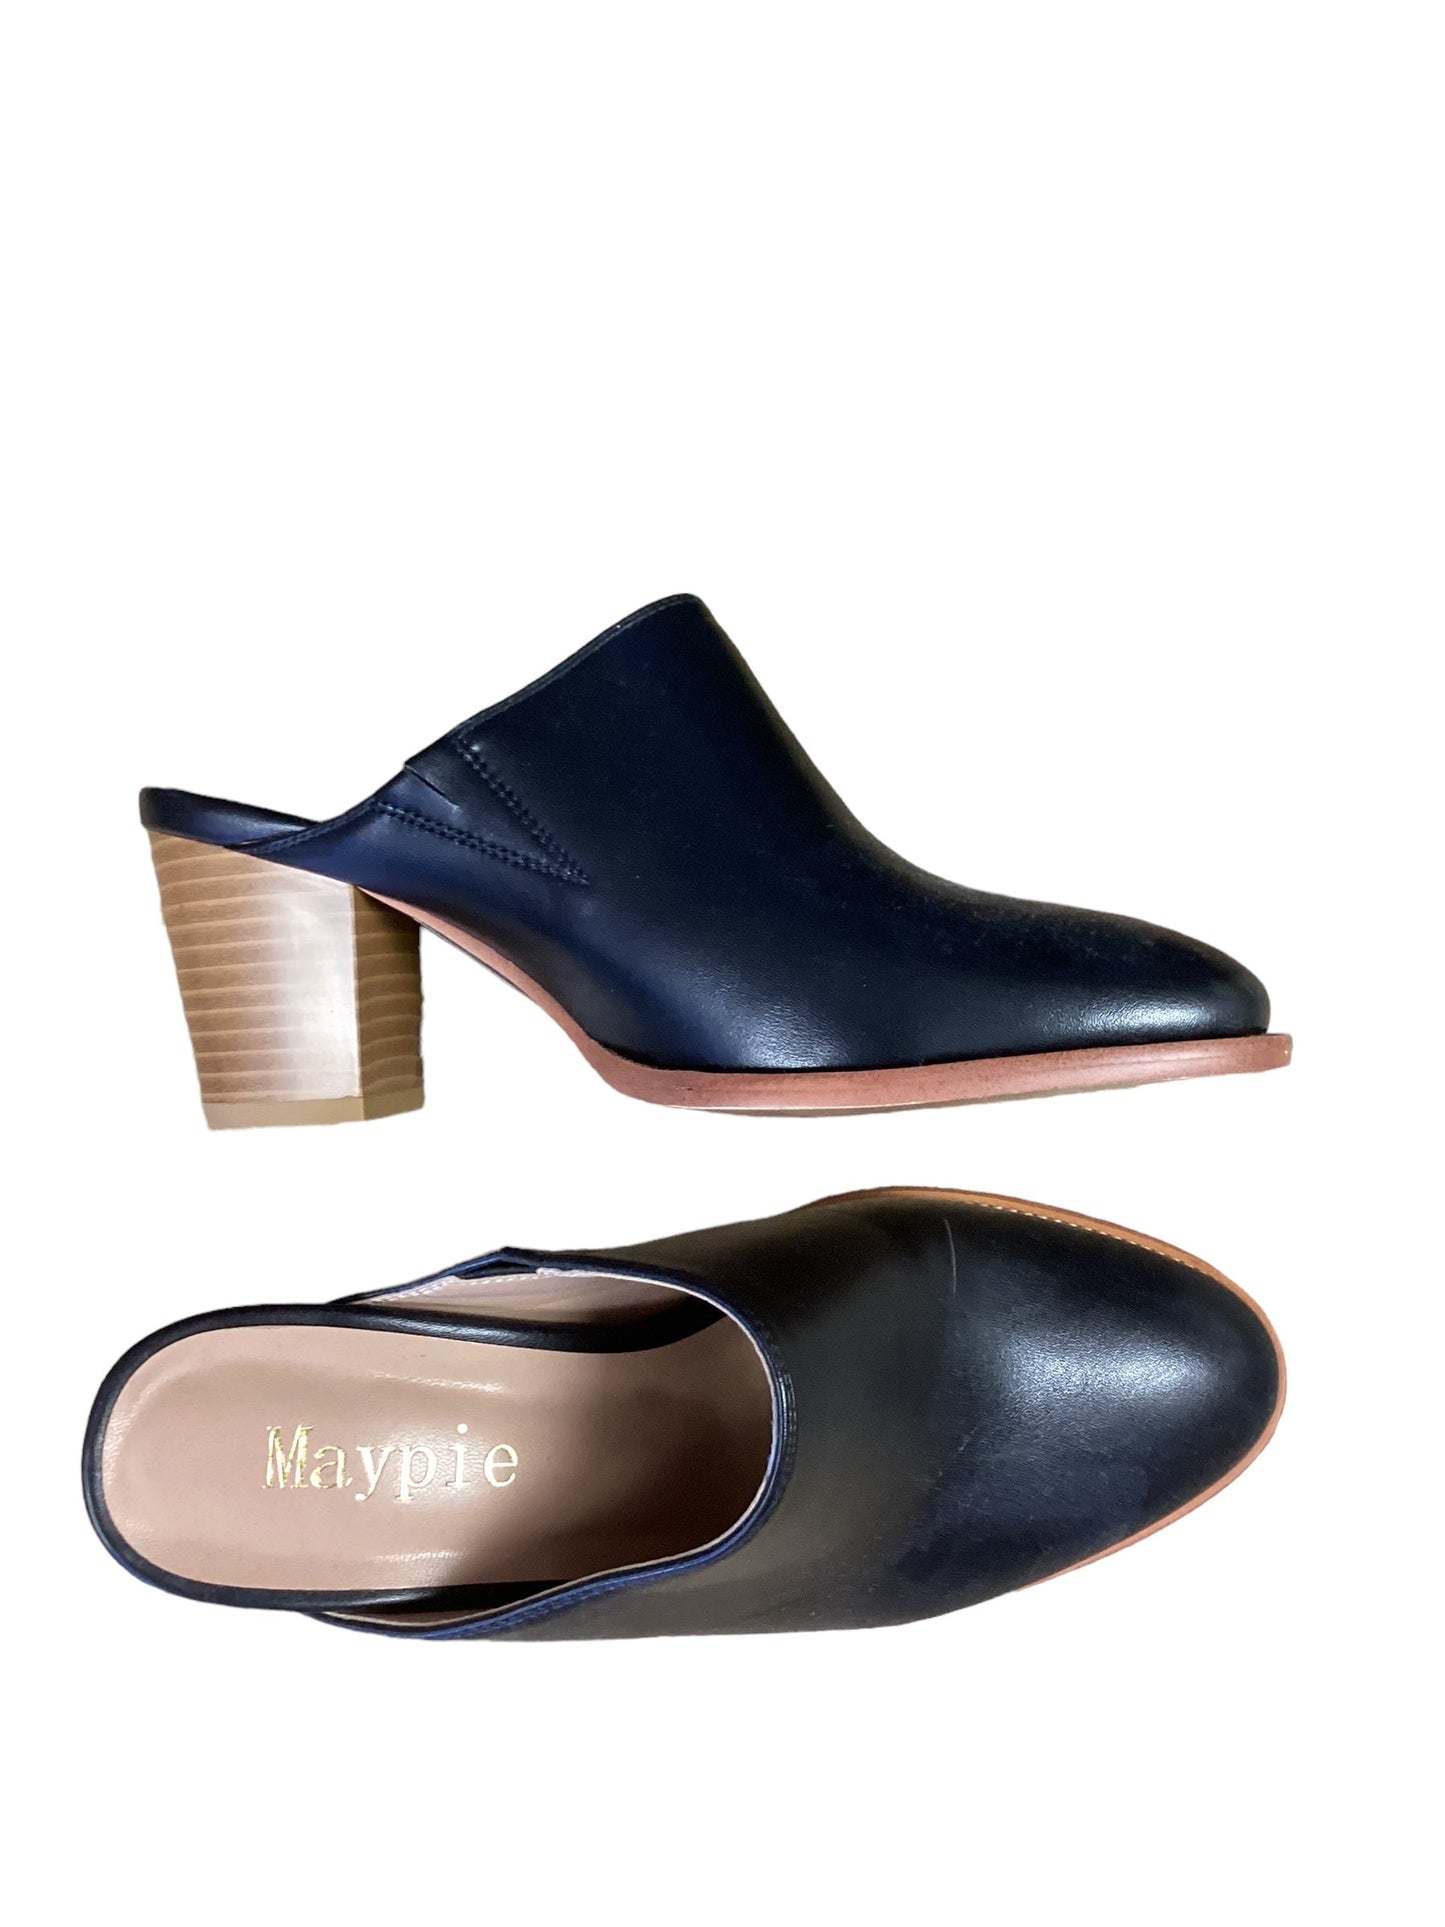 Black Shoes Heels Block Cme, Size 6